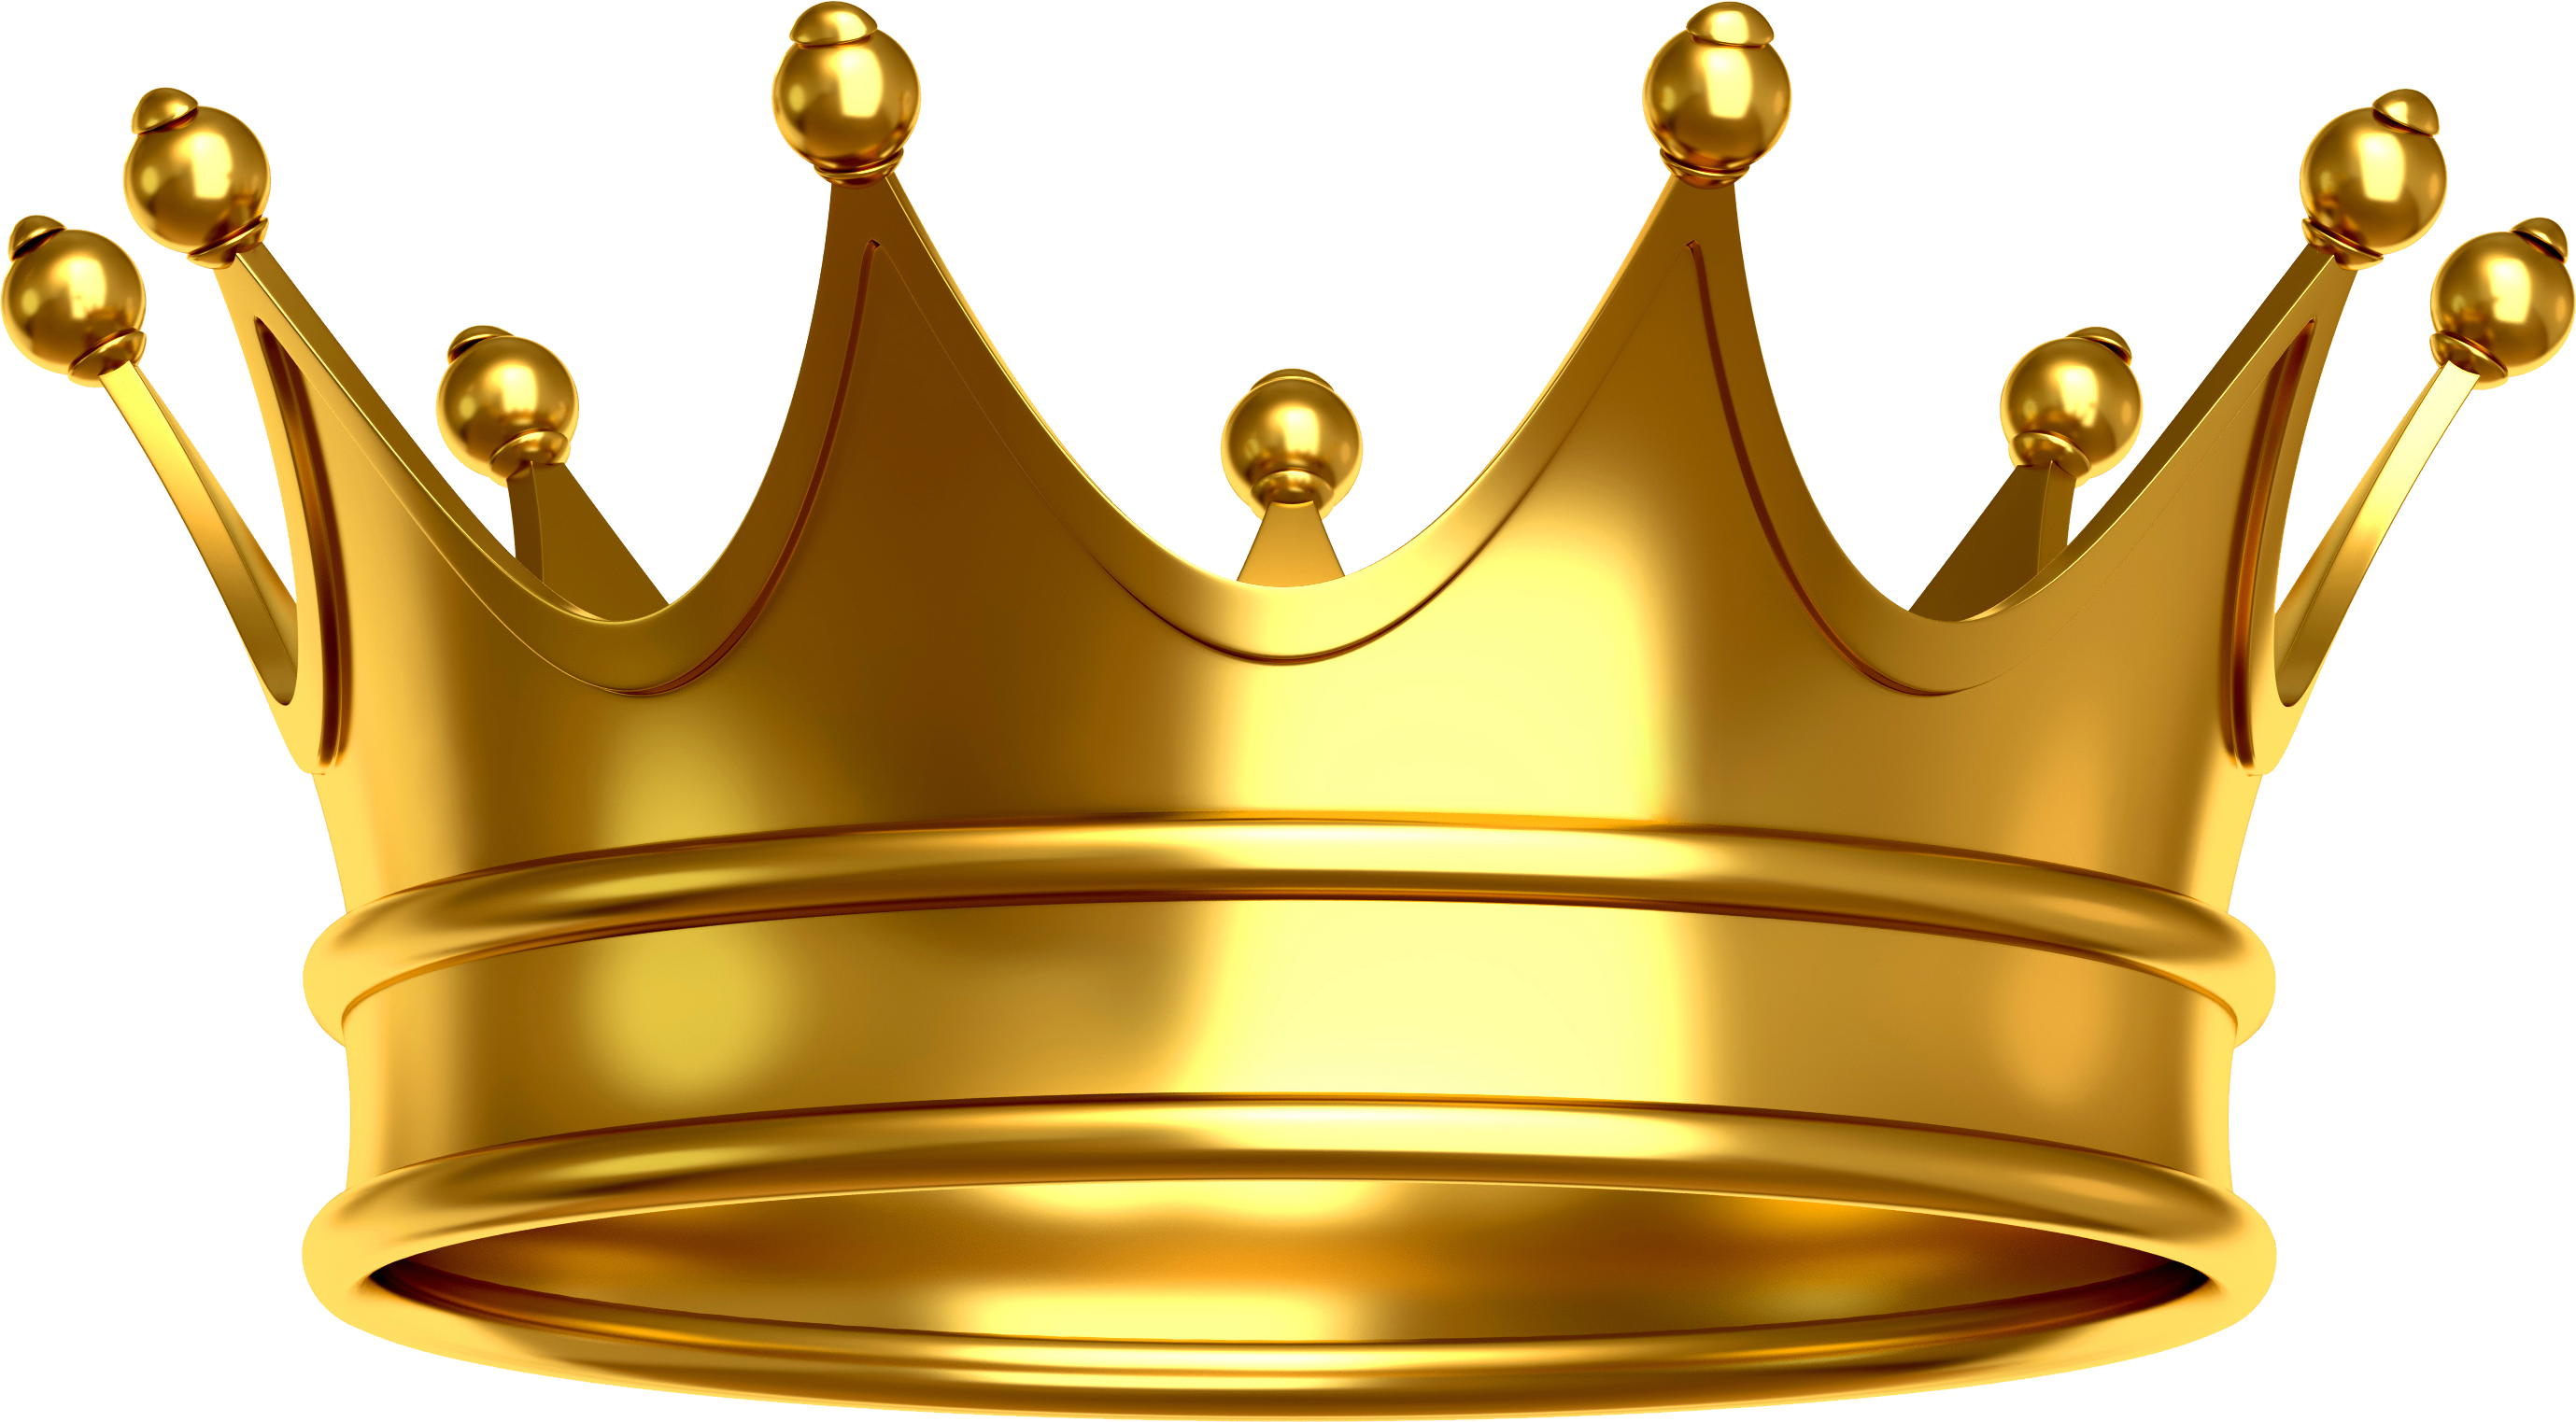 Crown. King crown image, Crown png, Crown image